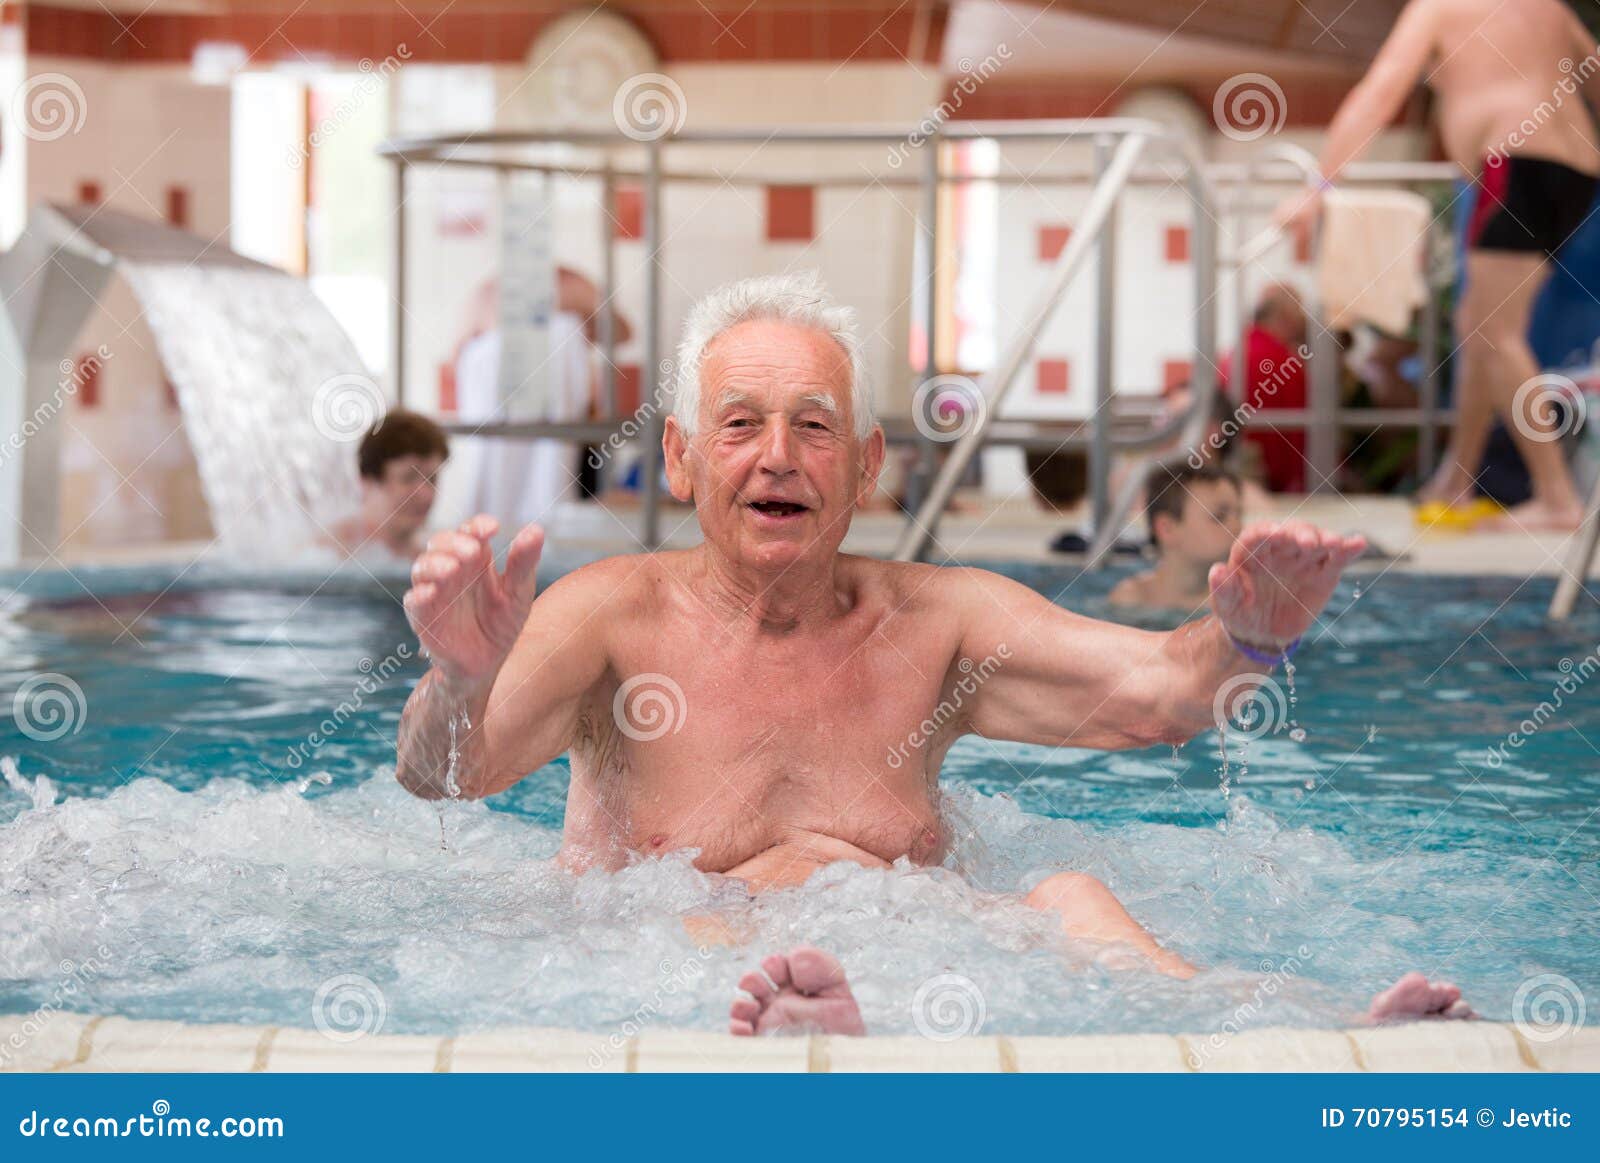 Дед купается. Старик в джакузи. Старики в бассейне. Дедушка купаться. Старик моется.